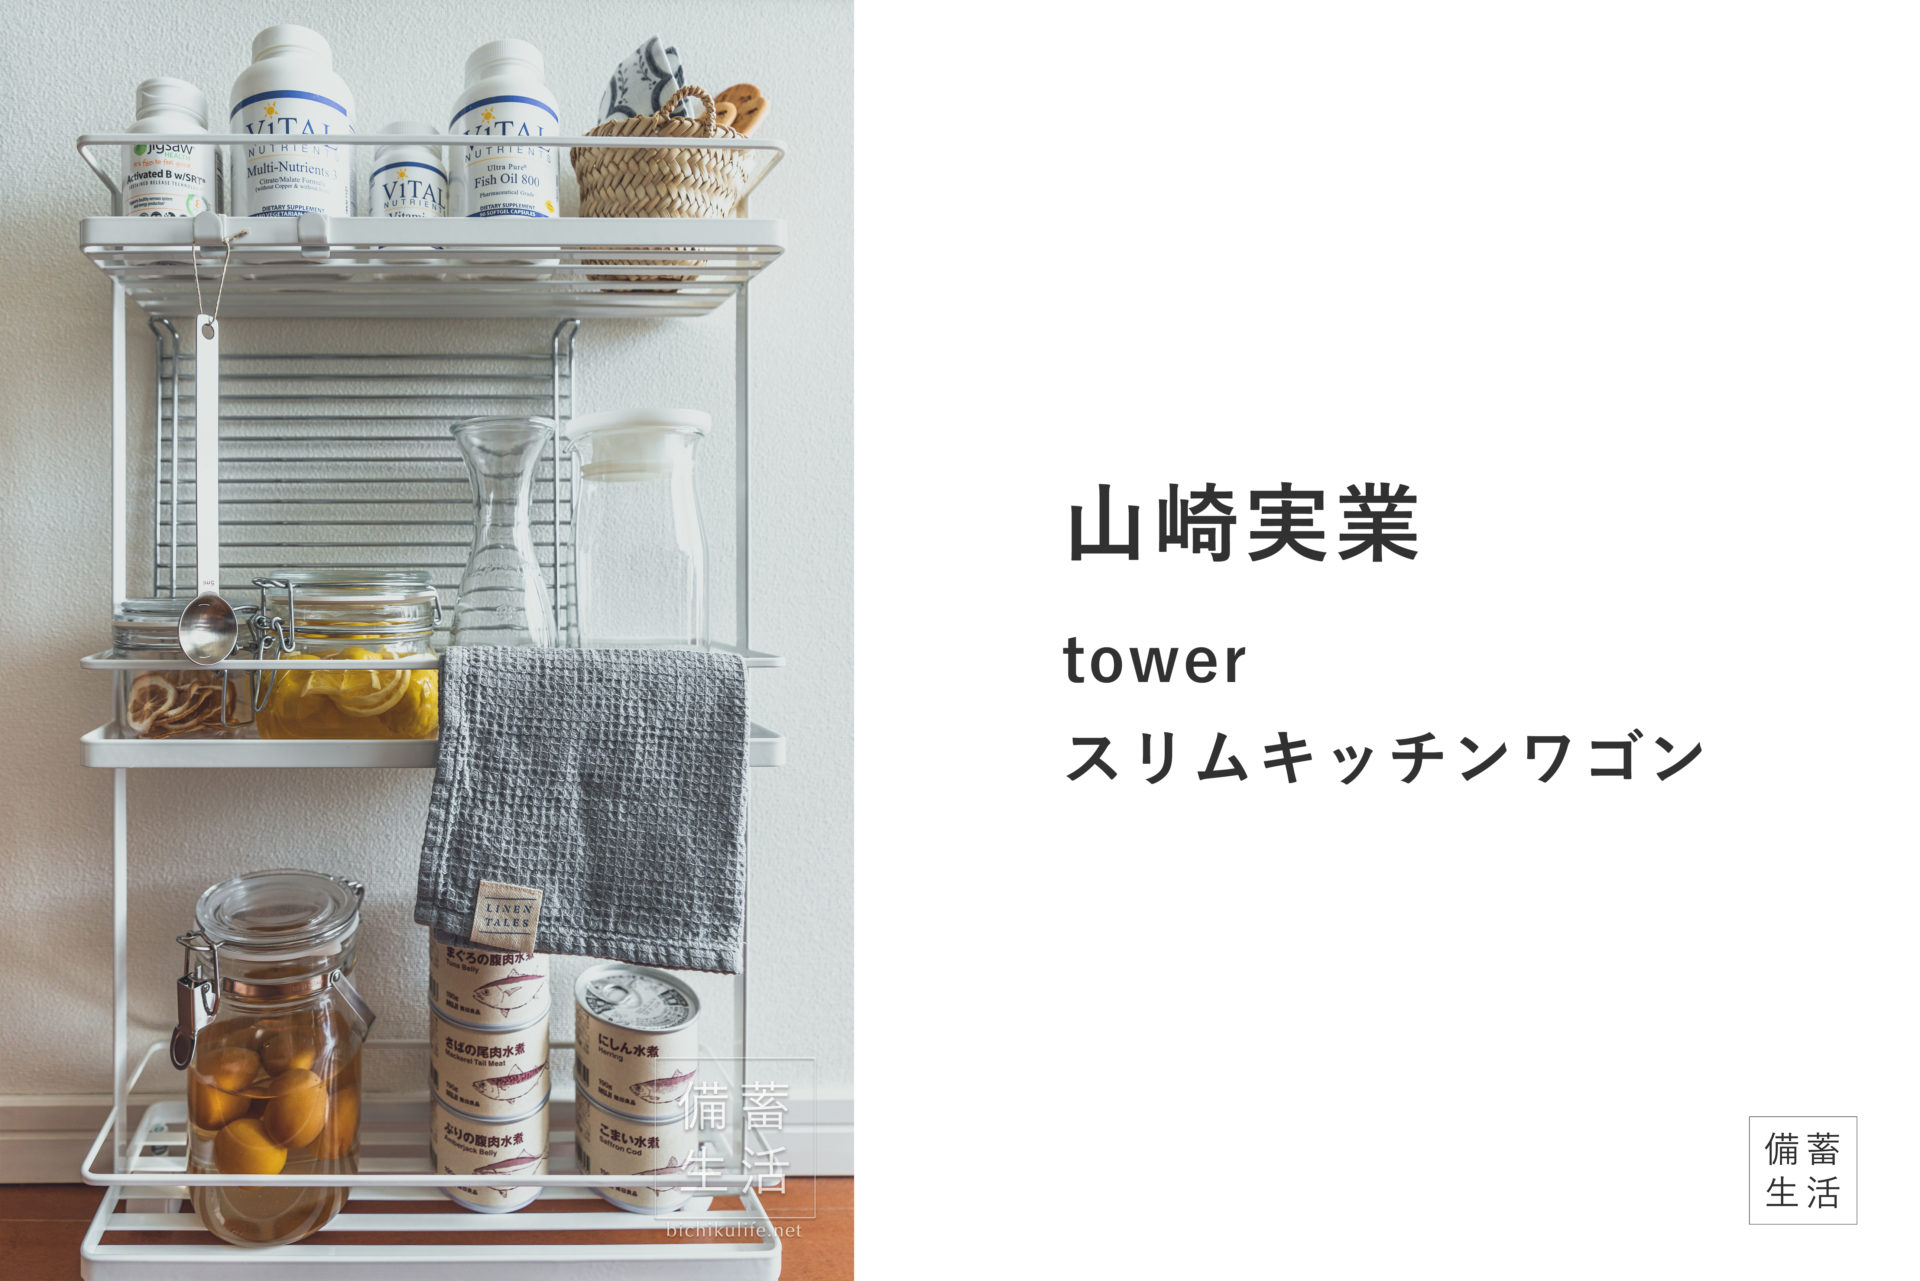 山崎実業 スリムキッチンワゴン tower